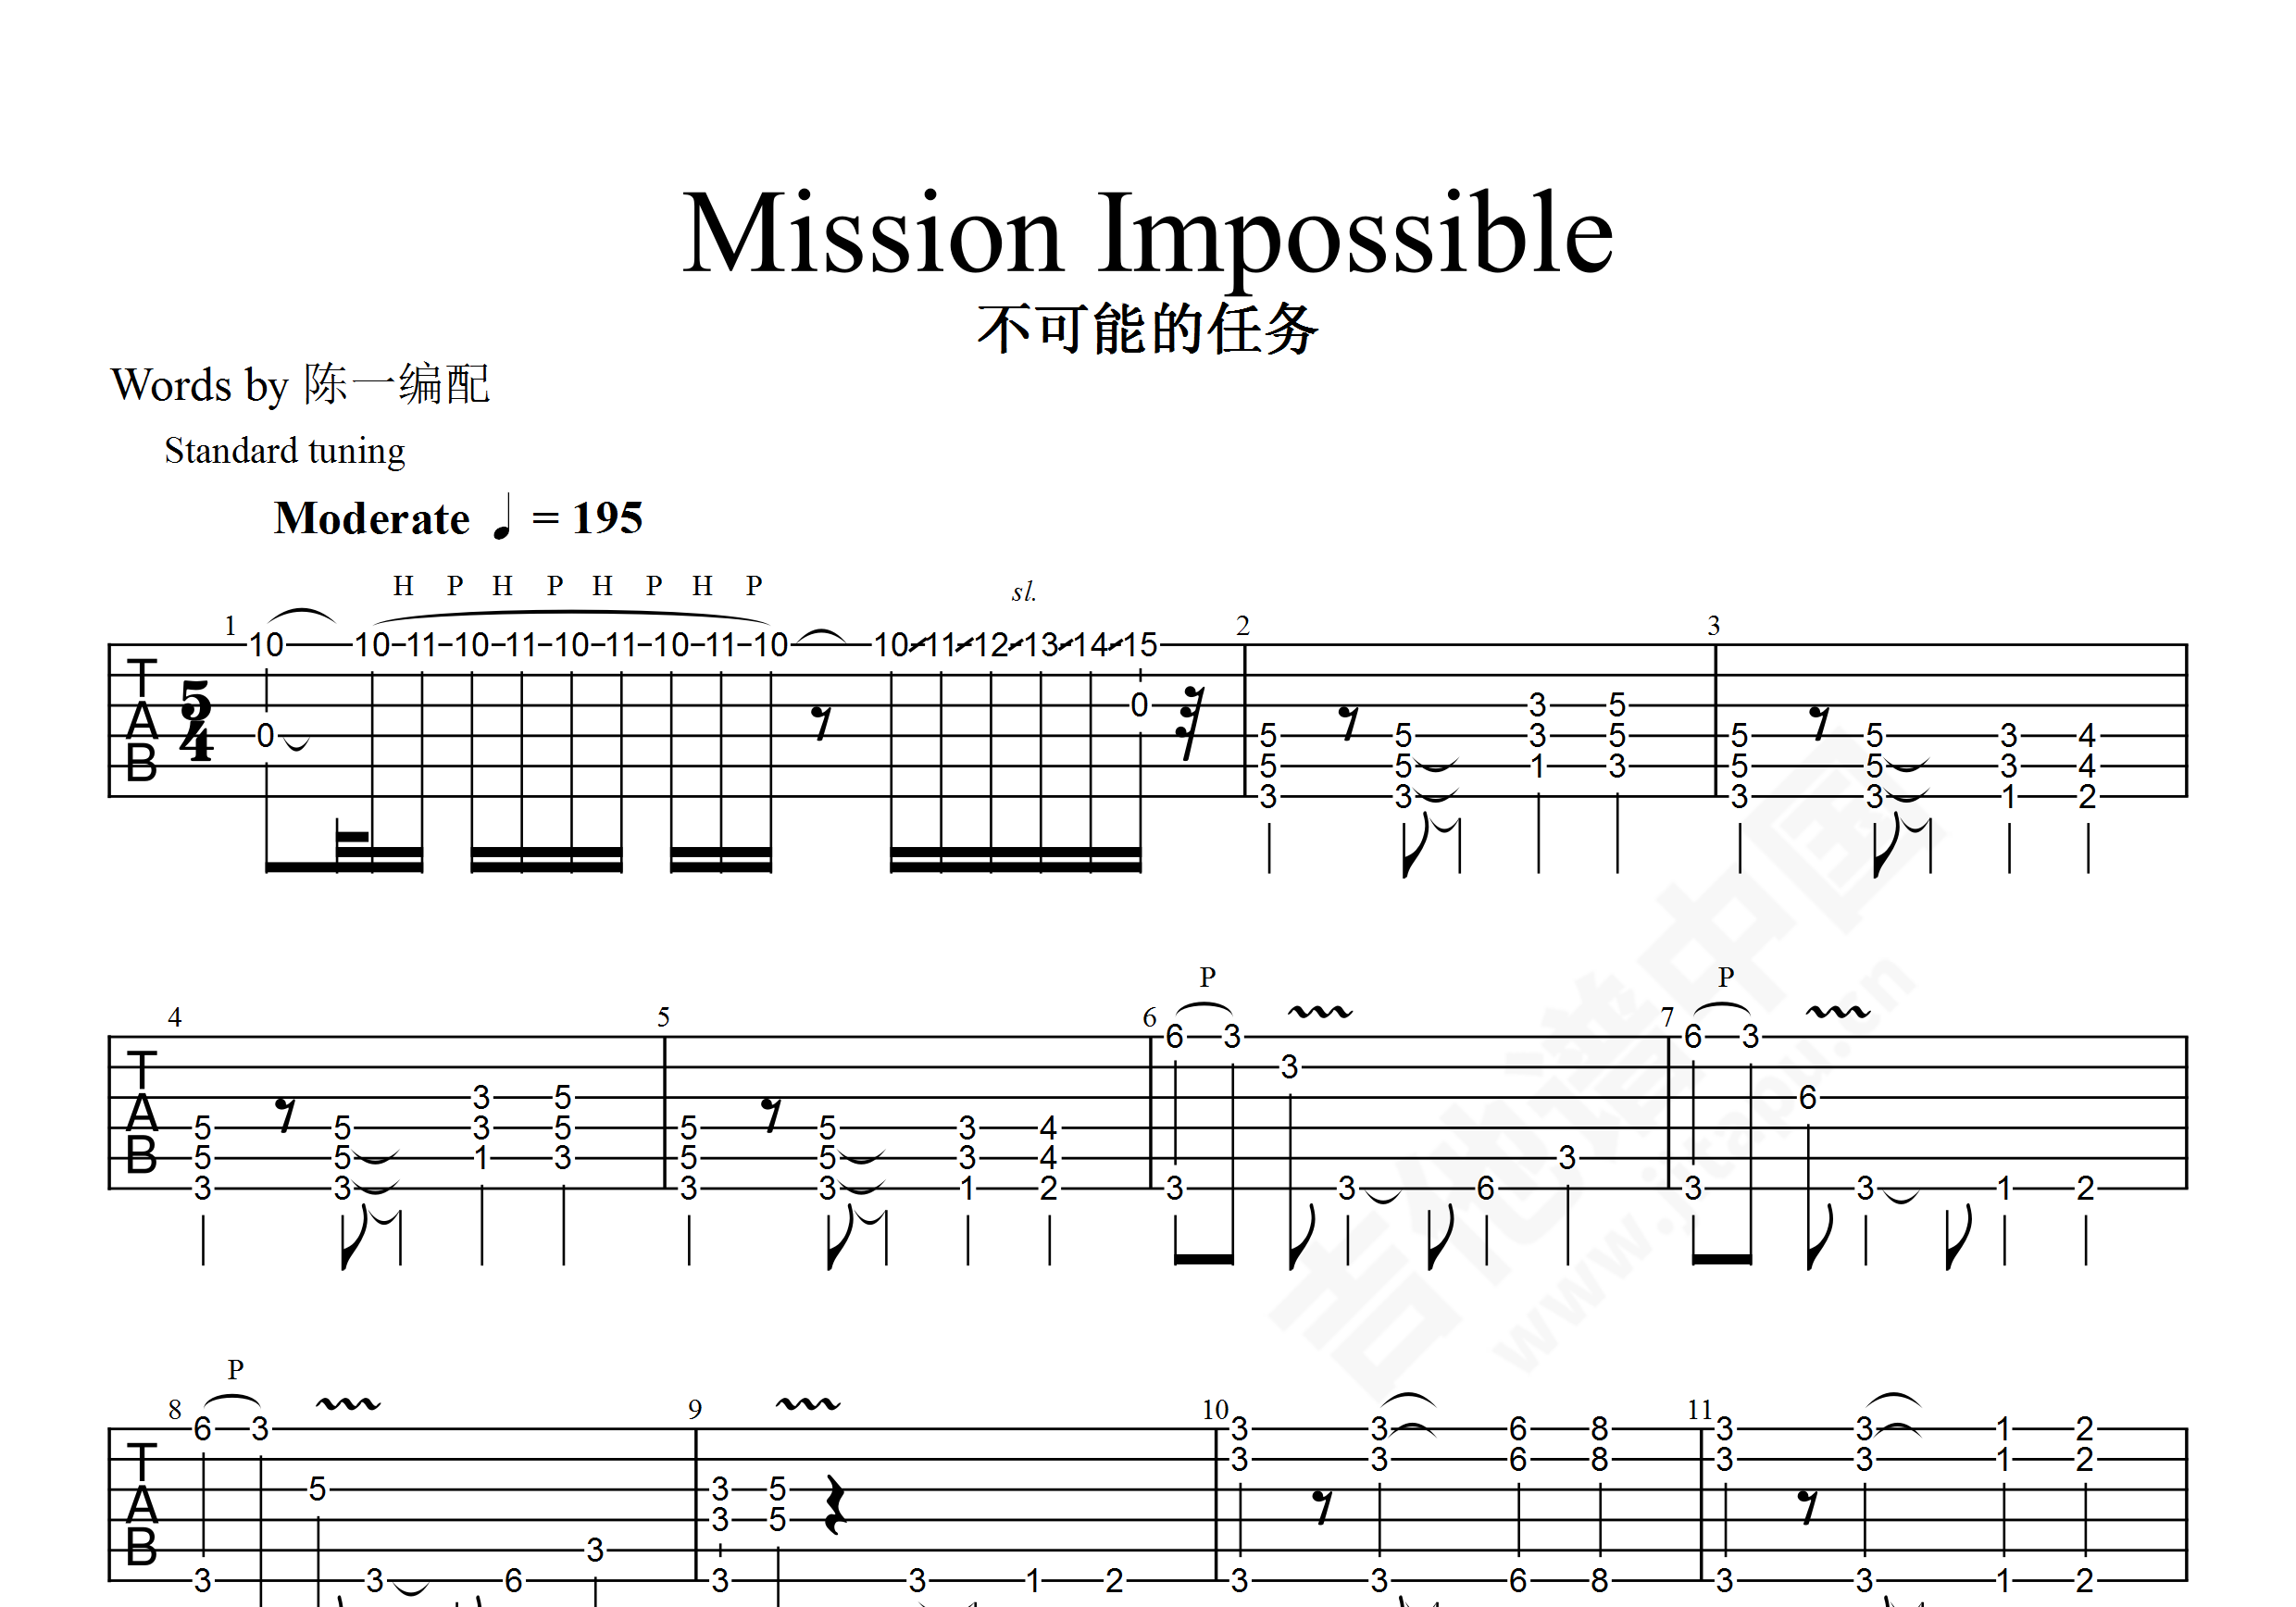 碟中谍主题曲 Mission impossible钢琴曲谱，于斯课堂精心出品。于斯曲谱大全，钢琴谱，简谱，五线谱尽在其中。